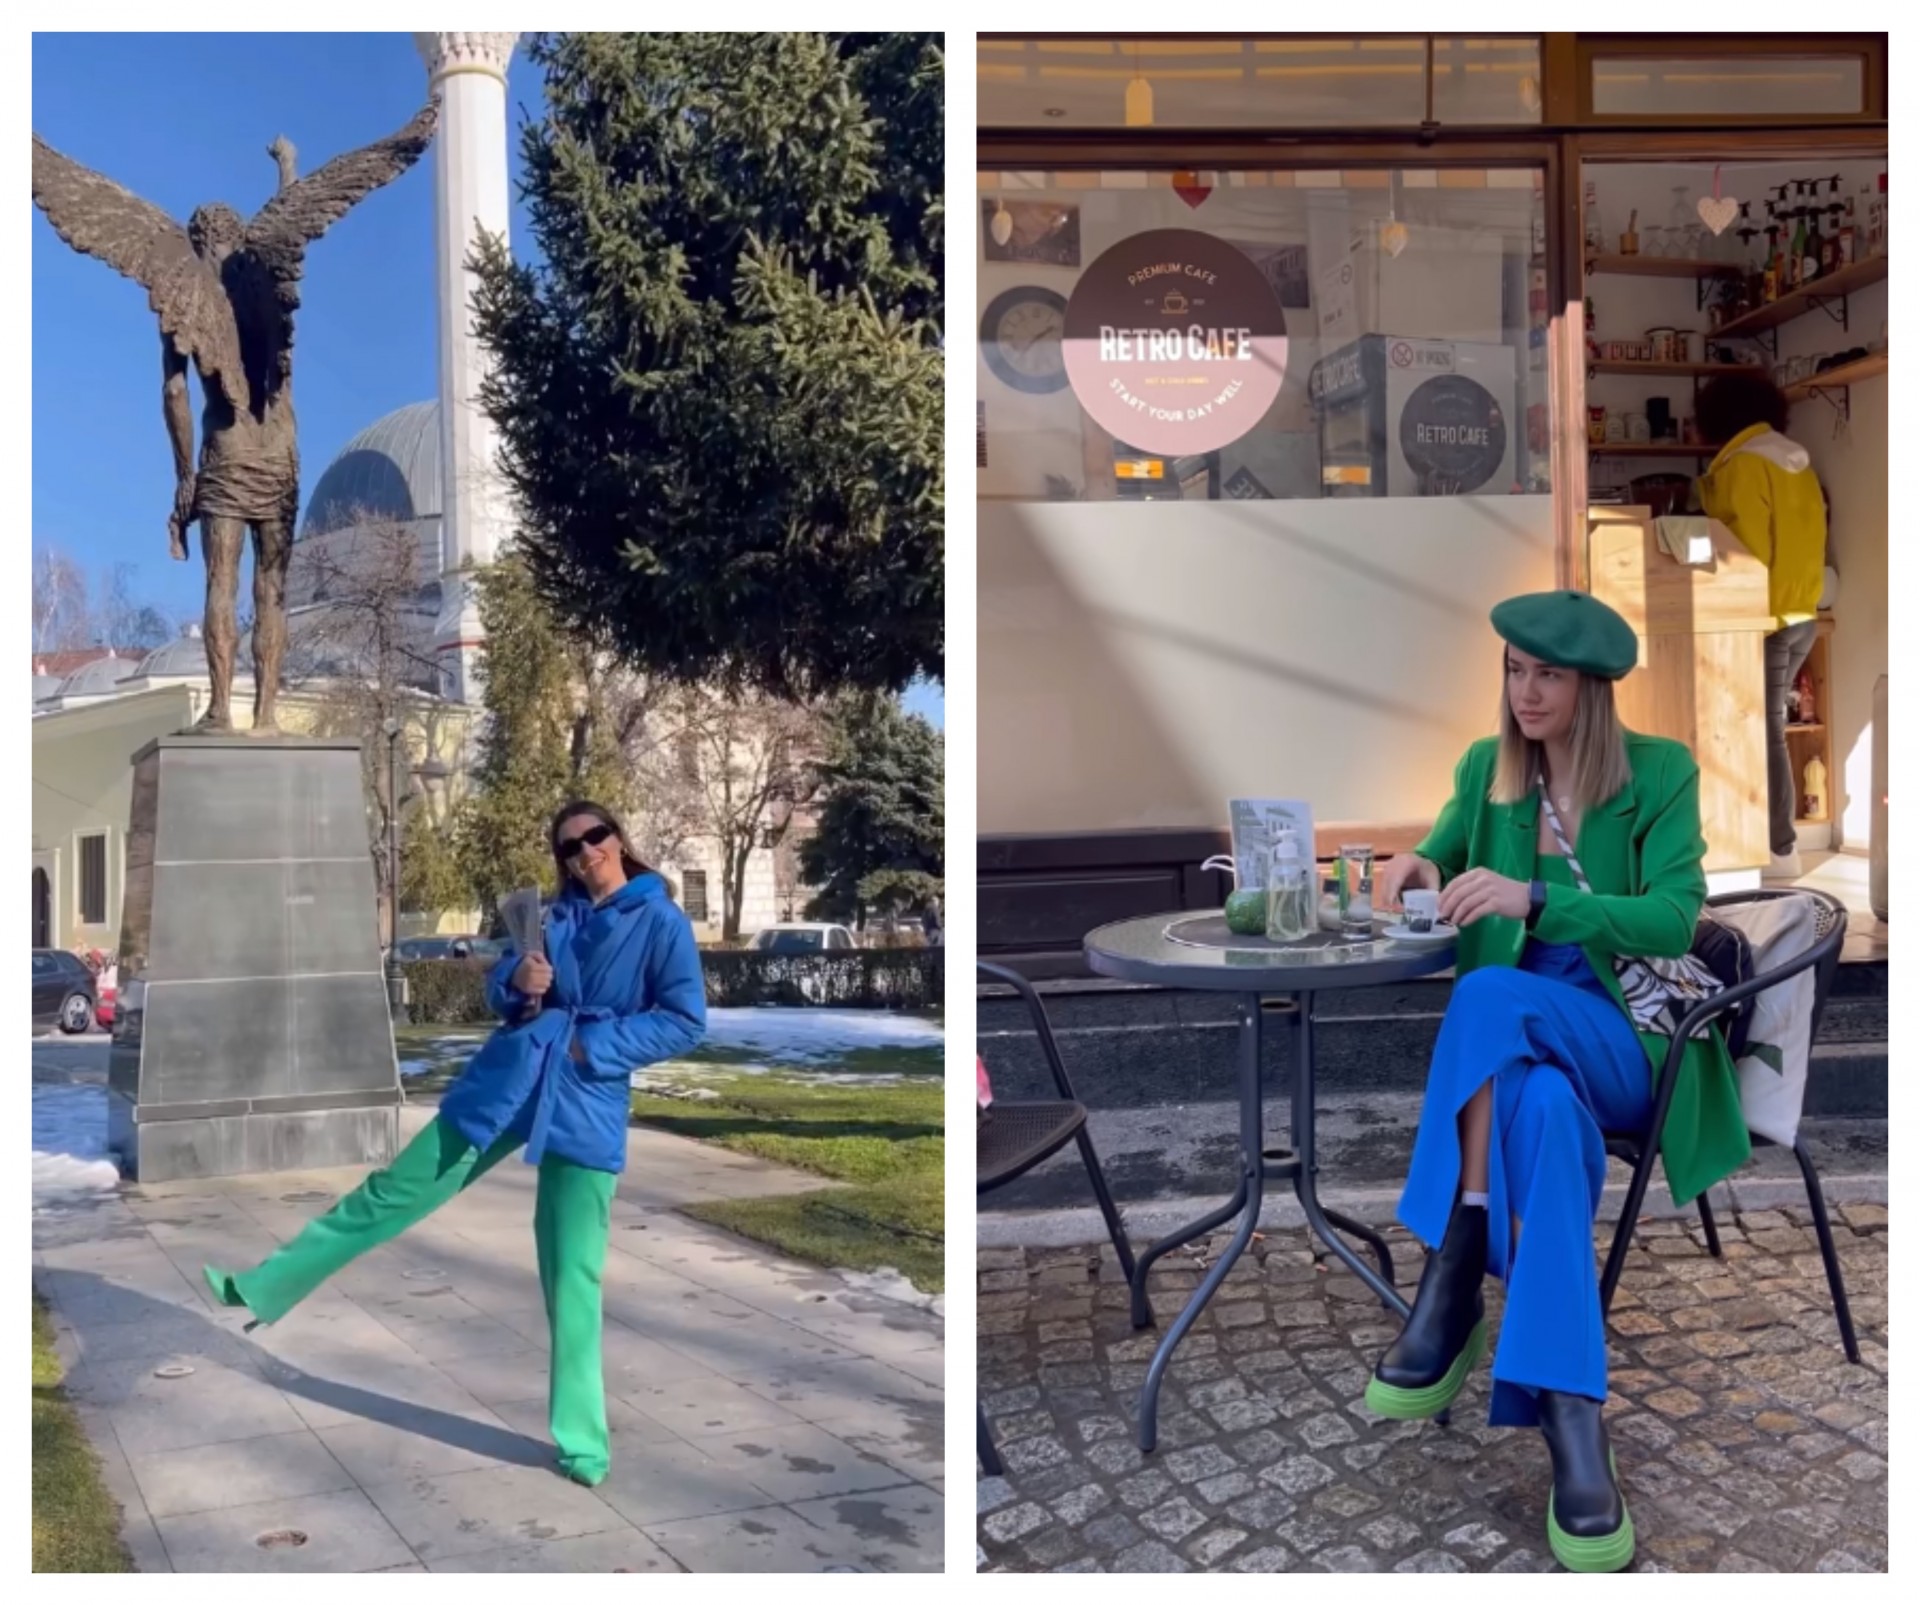 Моден хит: Комбинираме зелена и сина боја по примерот на Александра Шијакоска (ФОТО)